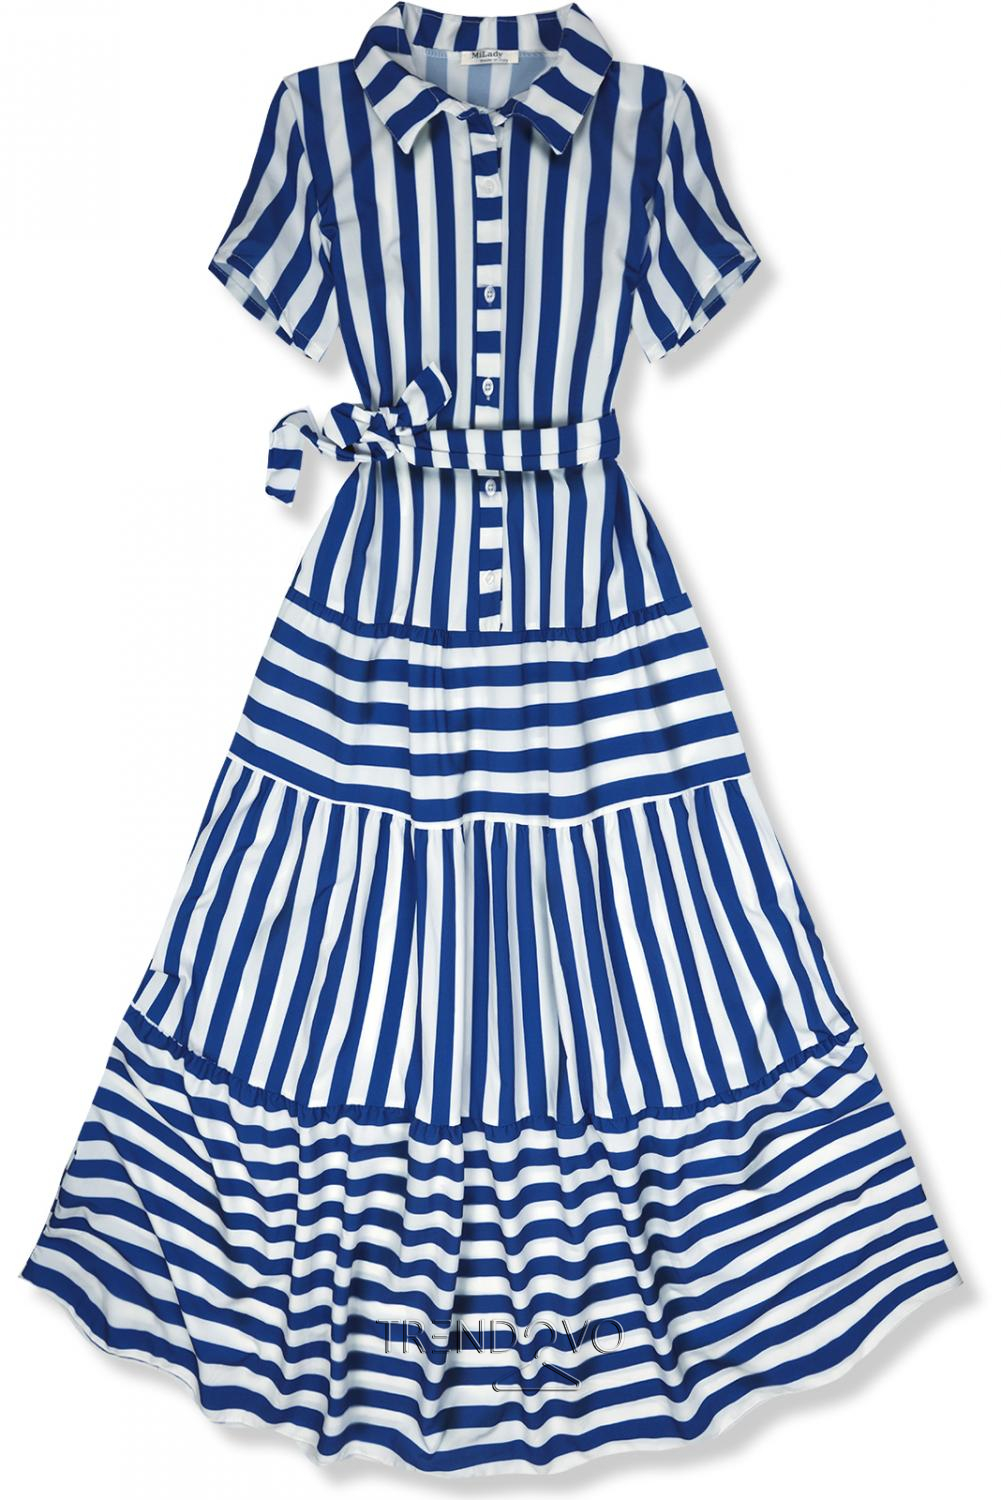 Modro-bílé pruhované maxi šaty